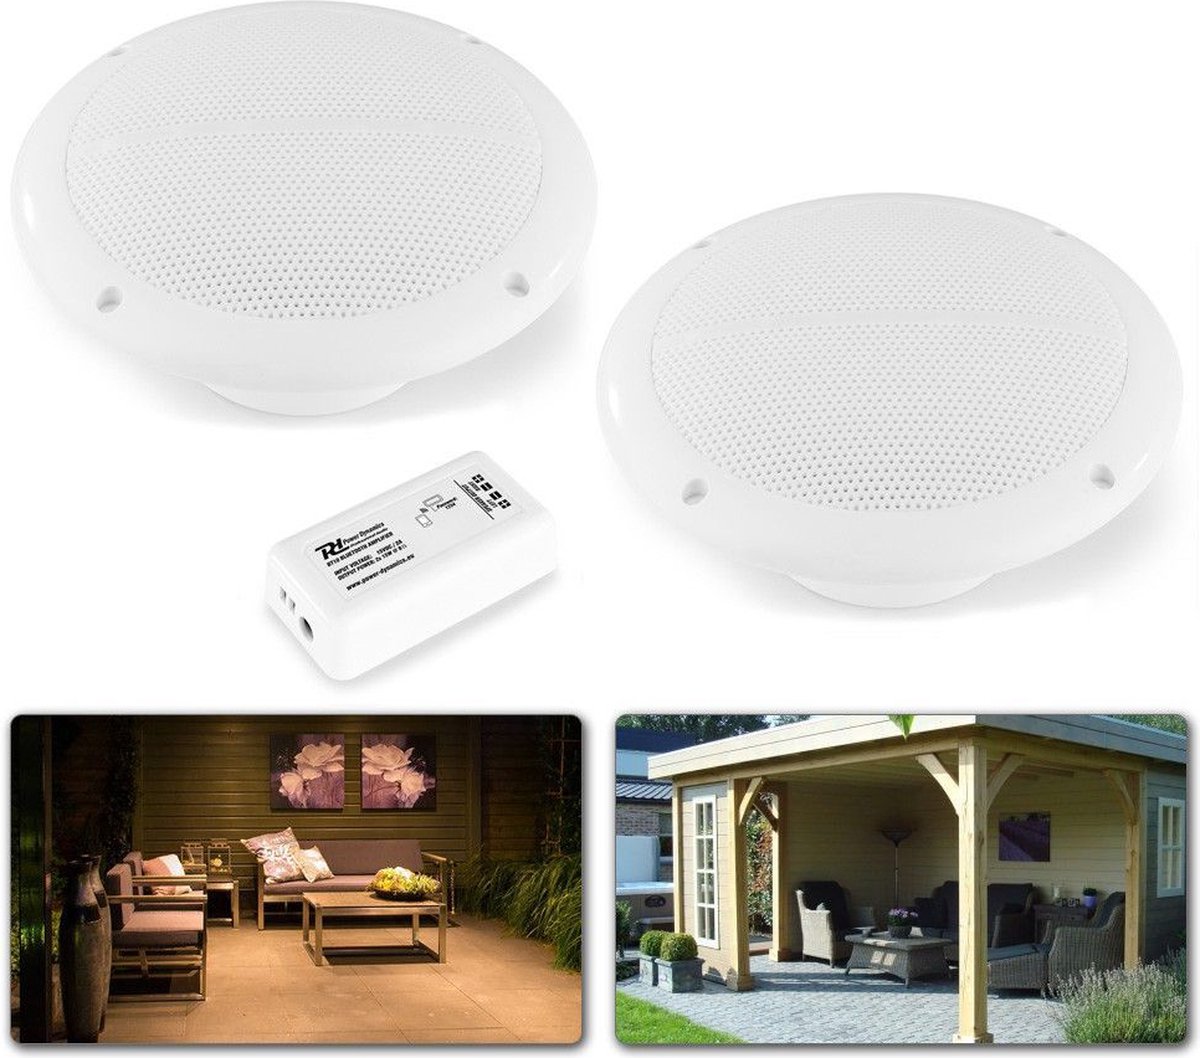 Bluetooth speakerset - Power Dynamics BT10SET - Inbouw speakers plafond - Buiten speakers voor badkamer, tuin, terras, etc. - Power Dynamics